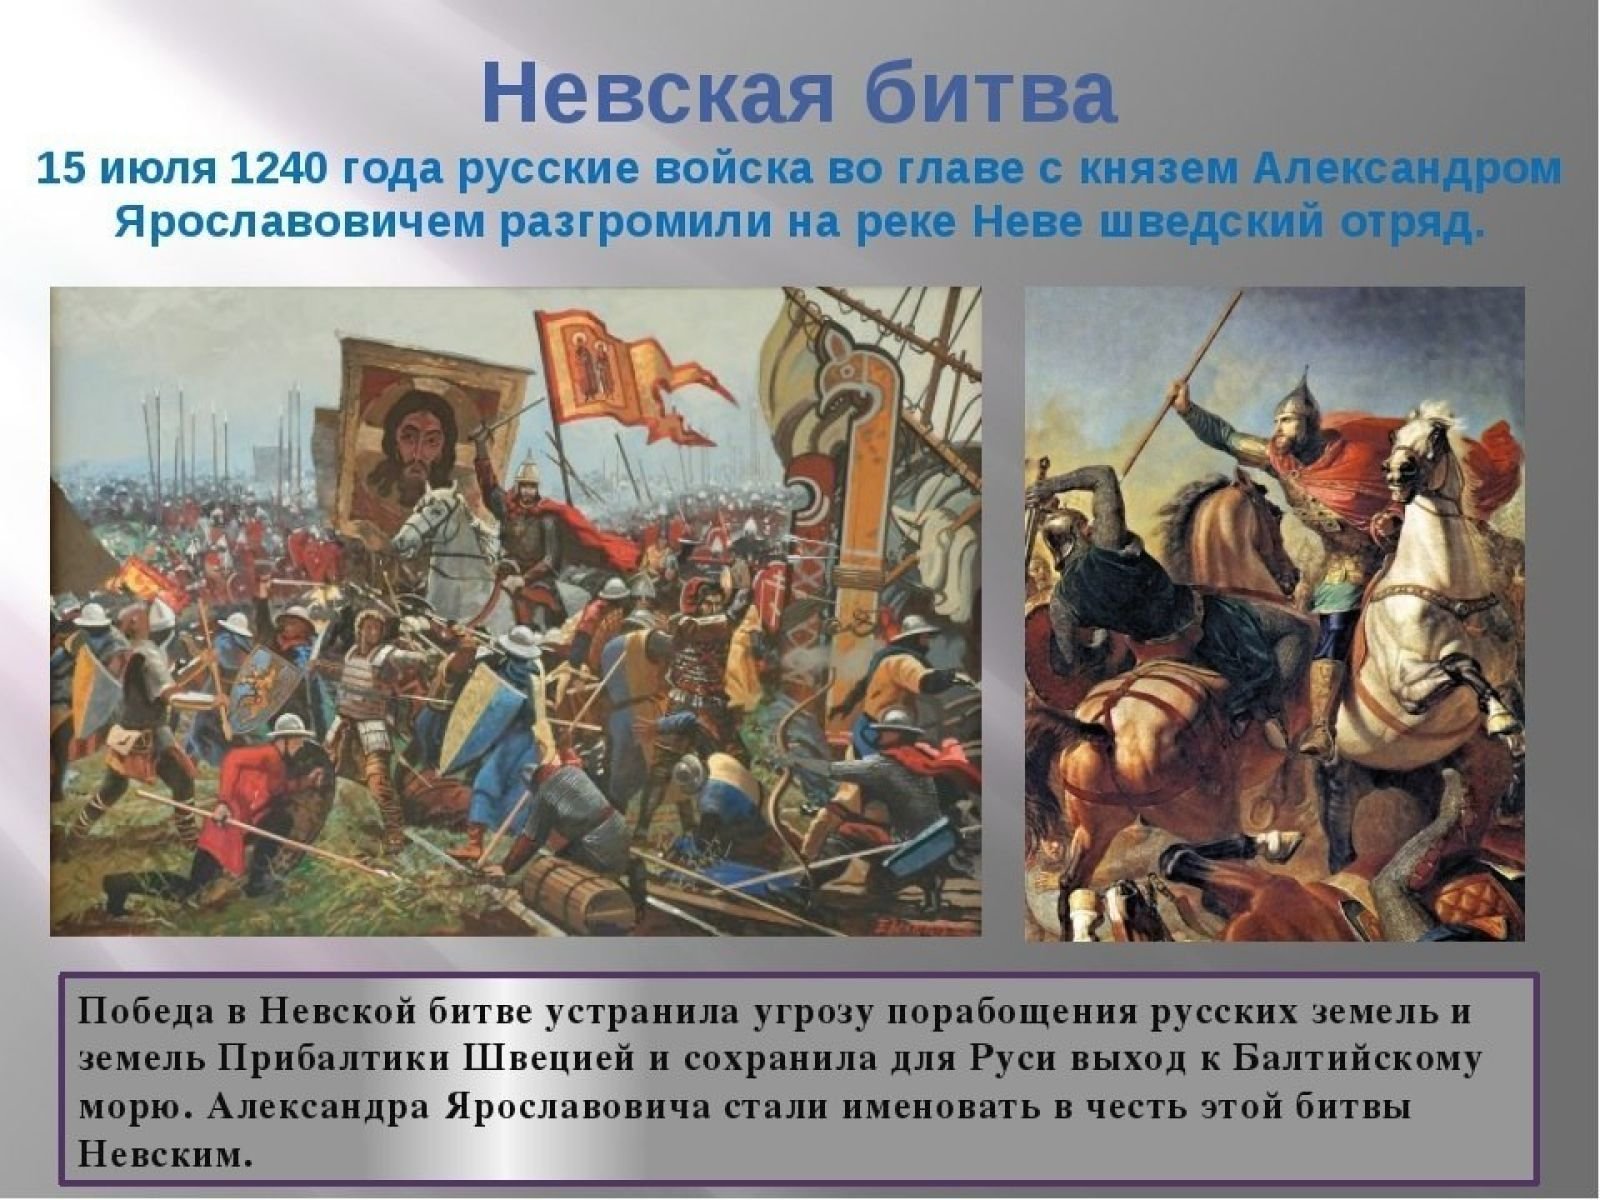 Шведские захватчики невская битва. 15 Июля 1240 г. русские войска разбили Шведов в Невской битве. 15 Июля 1240 года состоялась Невская битва..